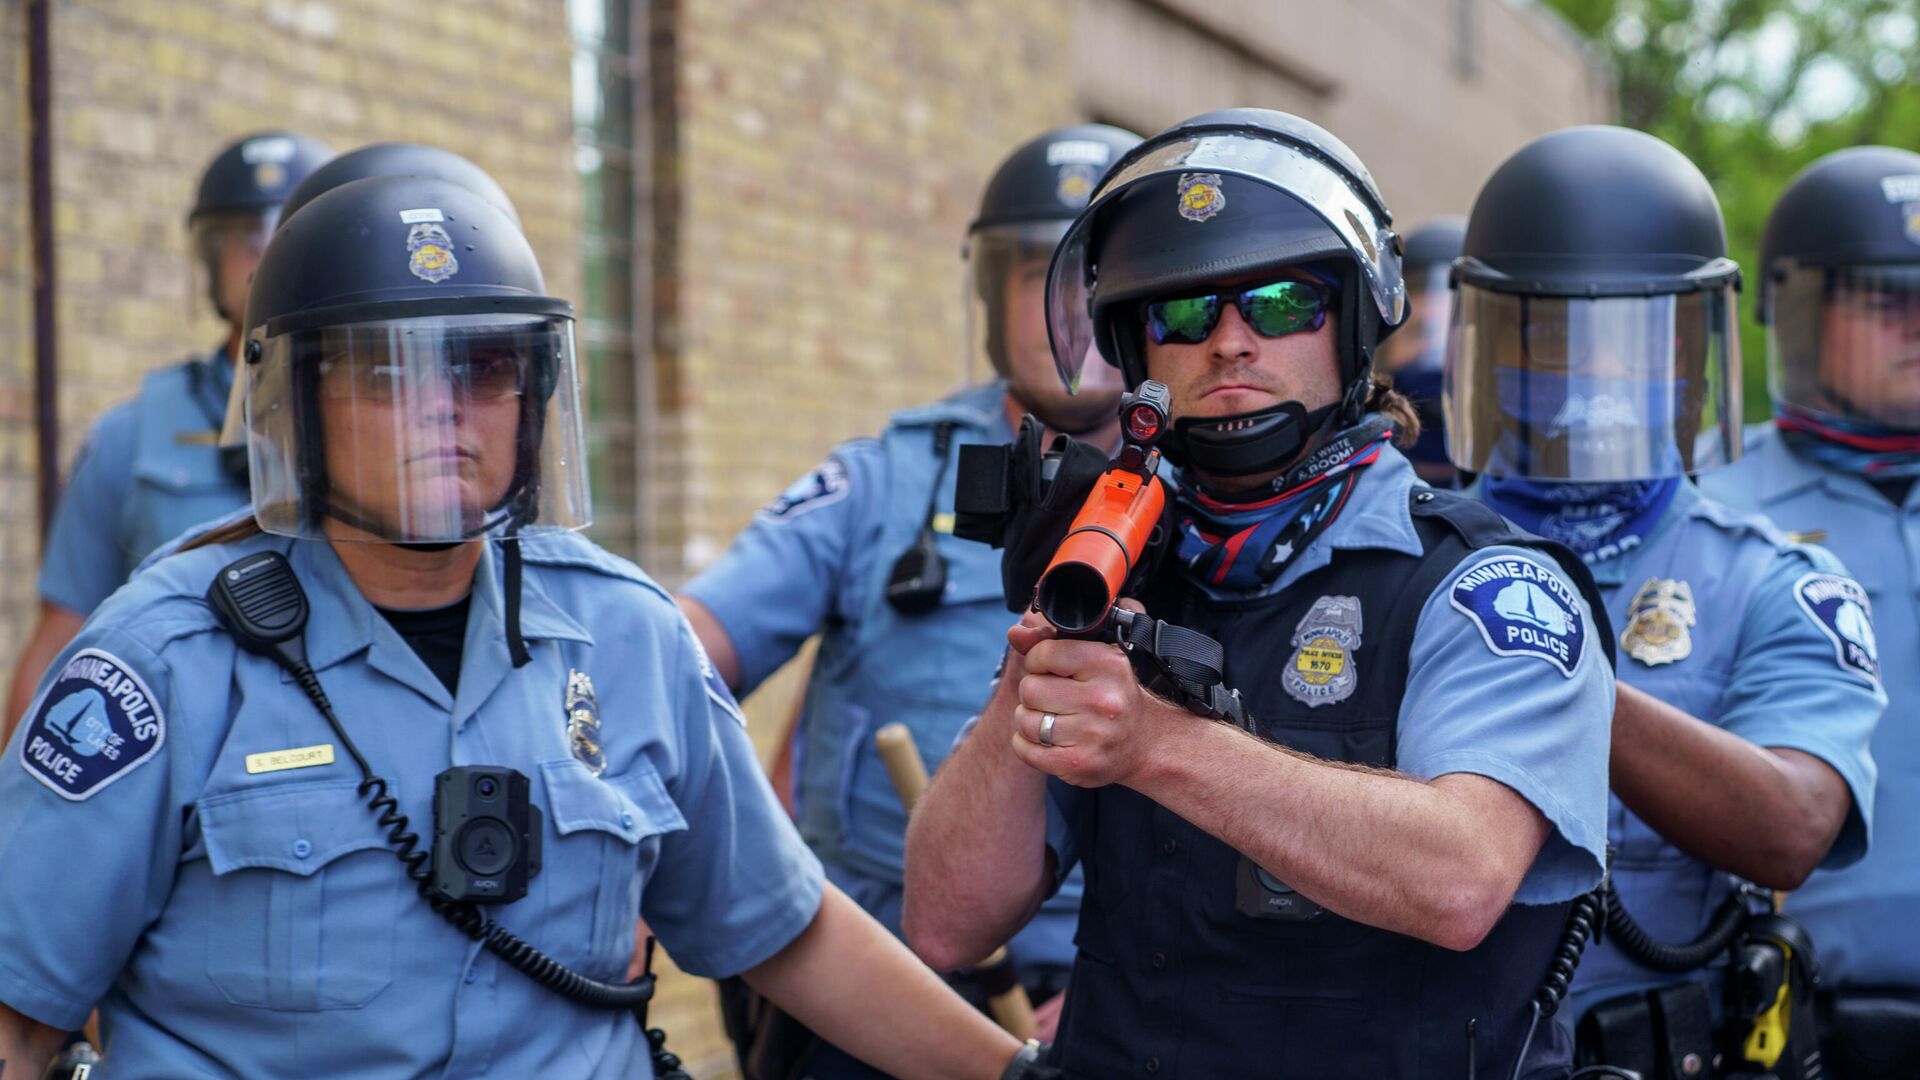 Полицейские возле полицейского участкав Миннеаполисе, штат Миннесота - РИА Новости, 1920, 30.06.2020